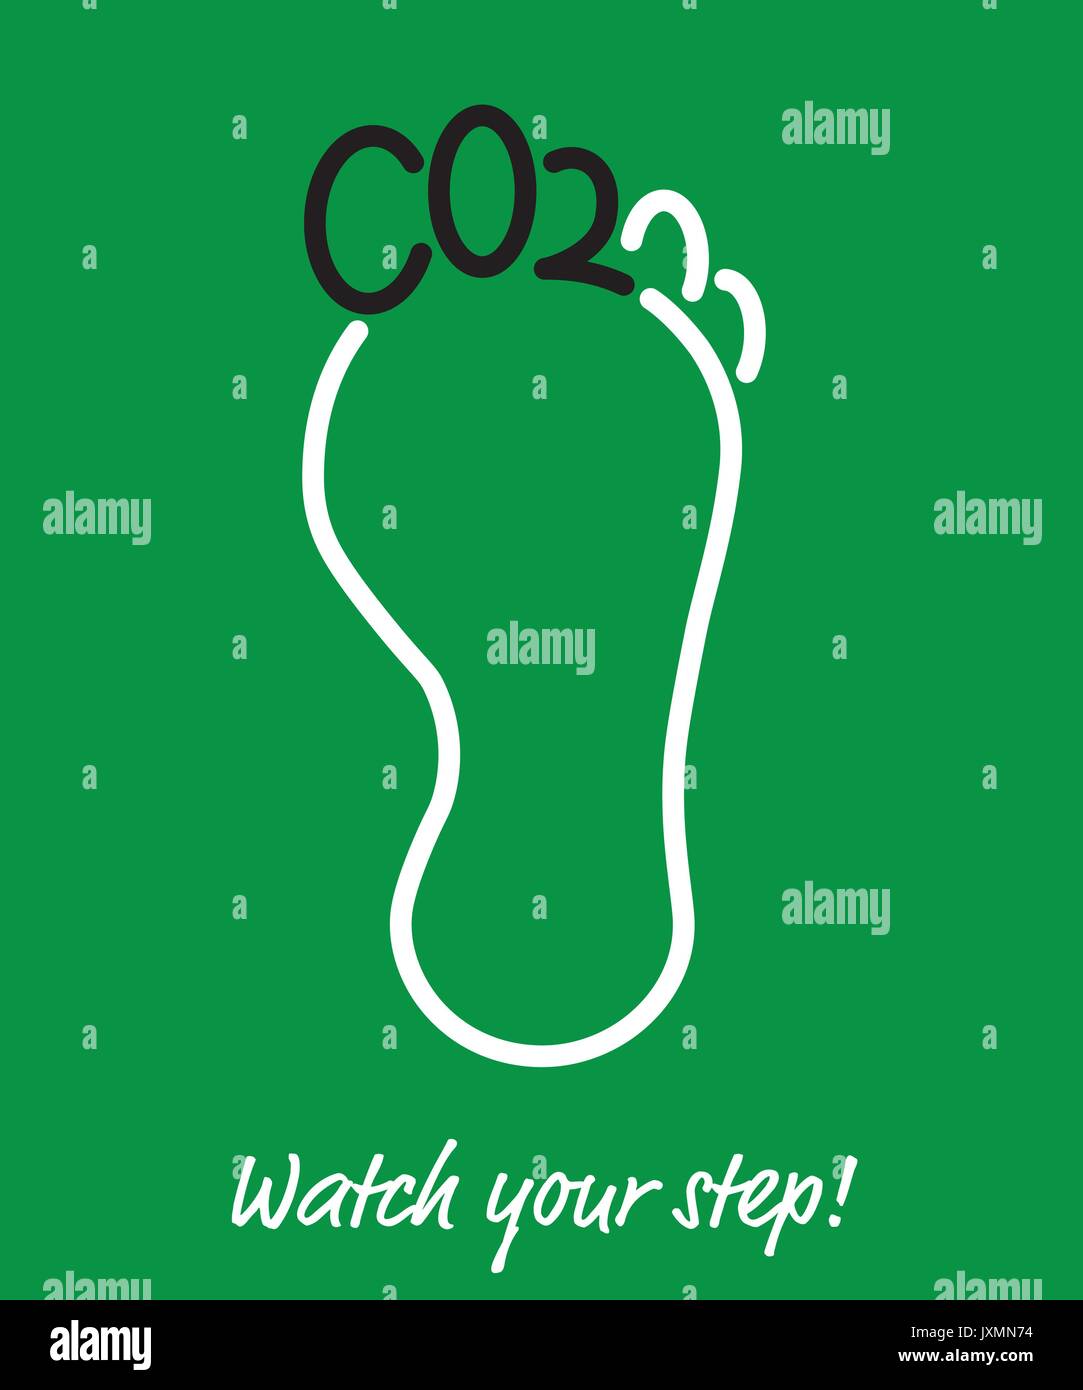 L'affiche de l'empreinte carbone, les doigts de pied en forme de lettres, CO2 Dioxyde de carbone à court terme pour Illustration de Vecteur